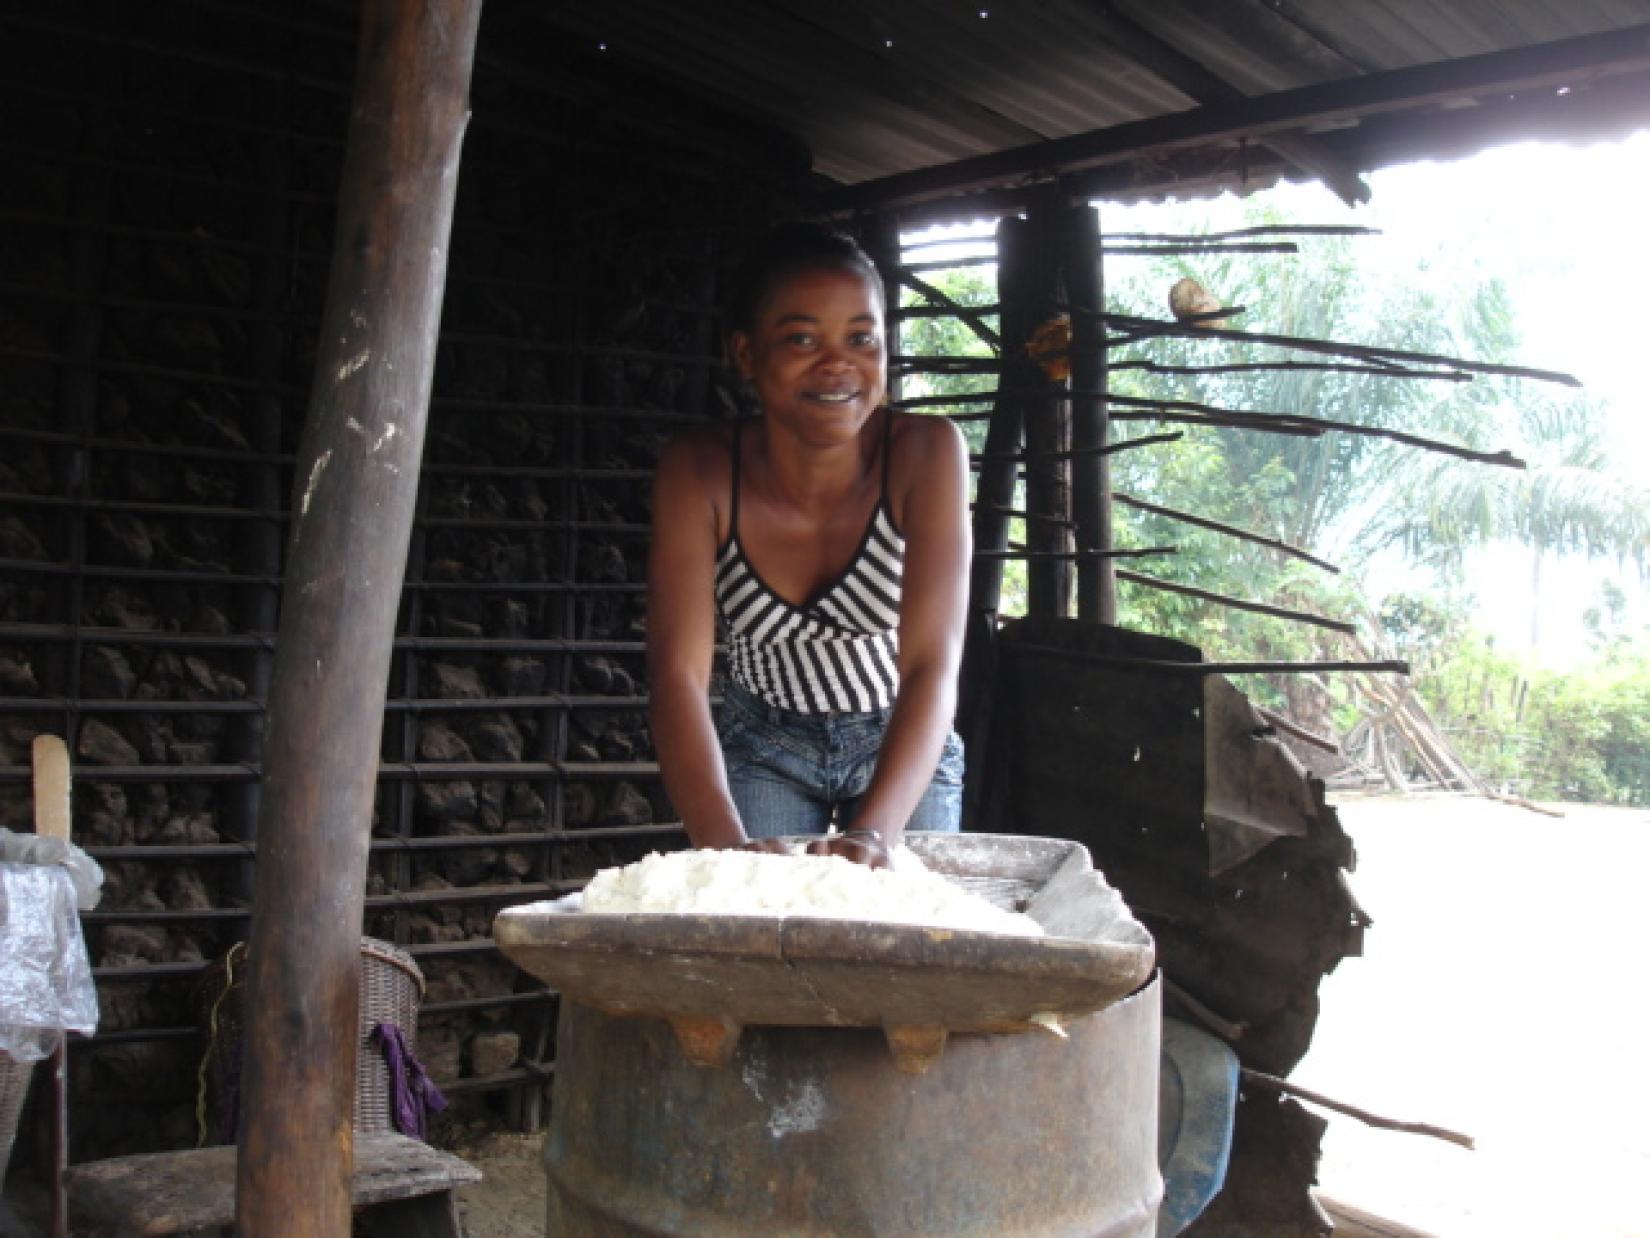 Mulher prepara 'foufou', prato típico do Congo à base de mandioca, no distrito de Ngabe, no departamento de Pool.